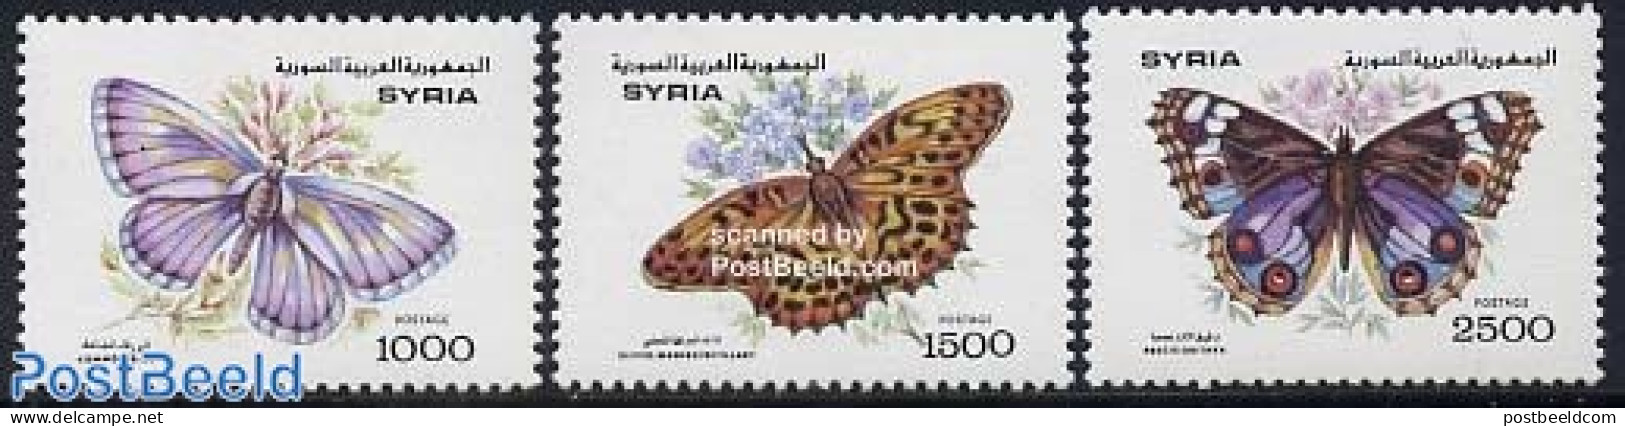 Syria 1993 Butterflies 3v, Mint NH, Nature - Butterflies - Syrien